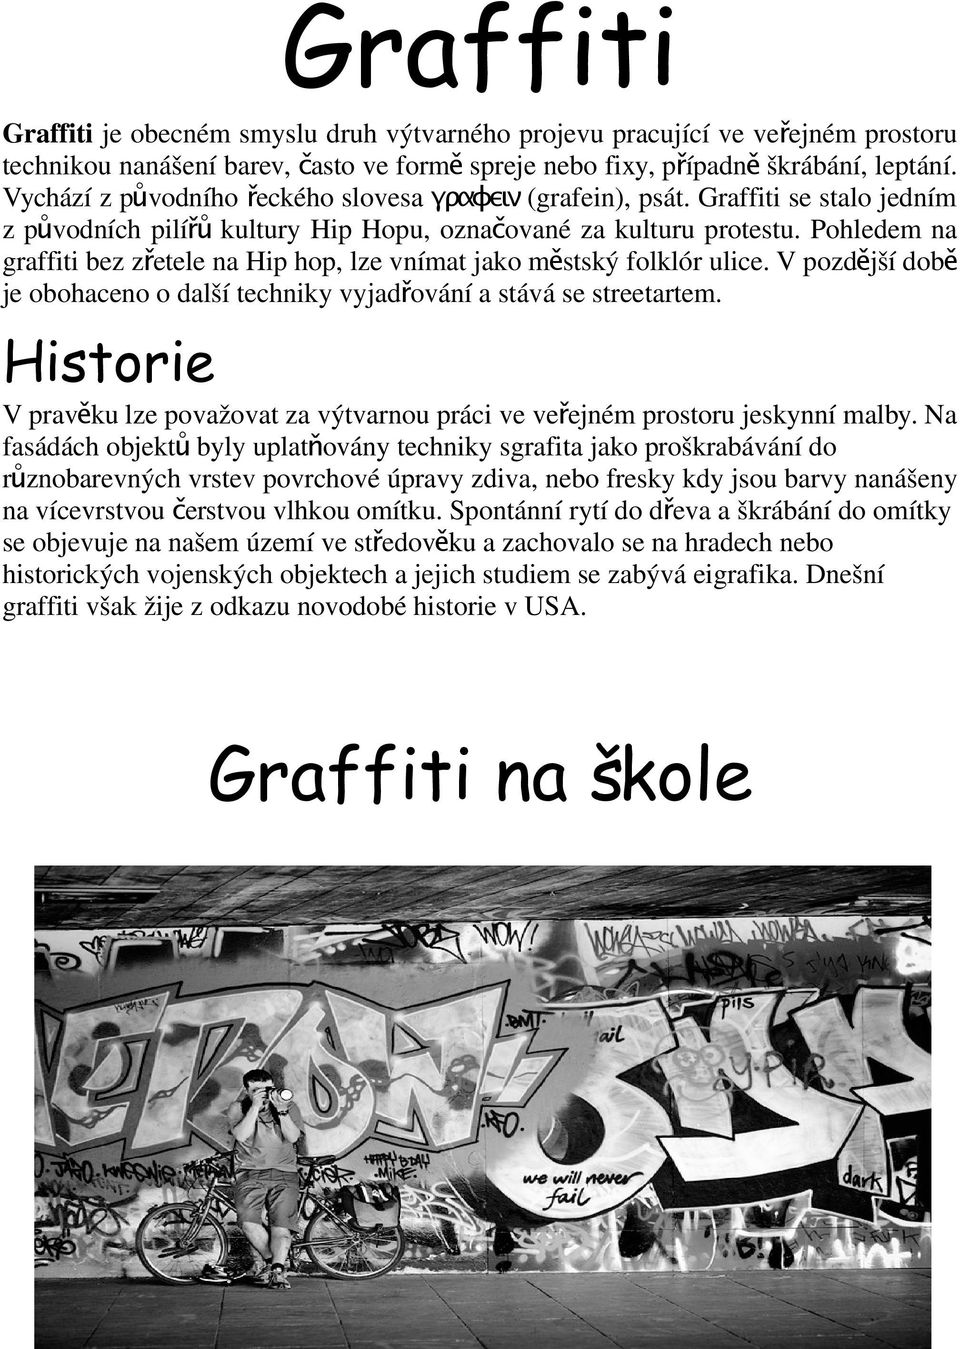 Pohledem na graffiti bez zřetele na Hip hop, lze vnímat jako městský folklór ulice. V pozdější době je obohaceno o další techniky vyjadřování a stává se streetartem.